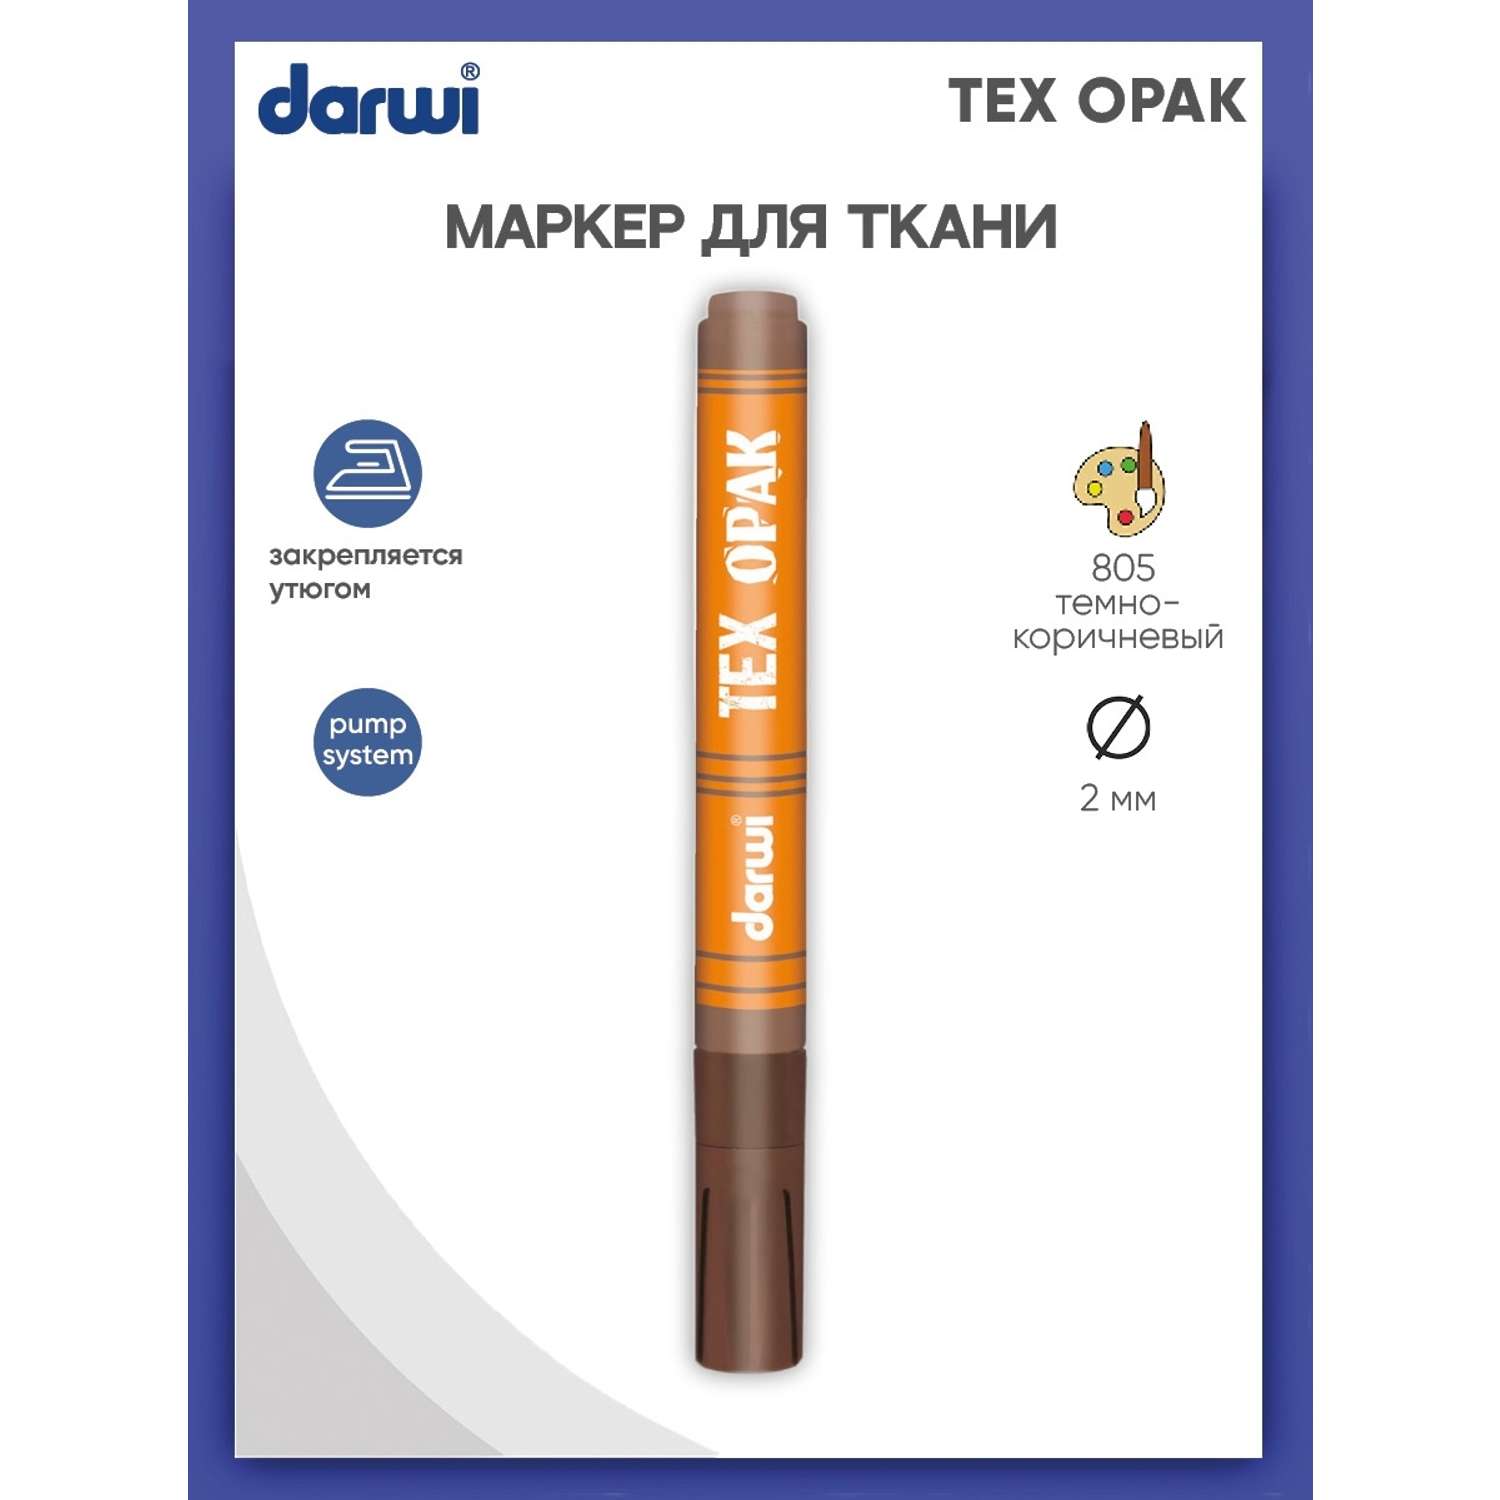 Маркер Darwi для ткани TEX OPAK DA0160013 2 мм укрывистый 805 темно - коричневый - фото 1